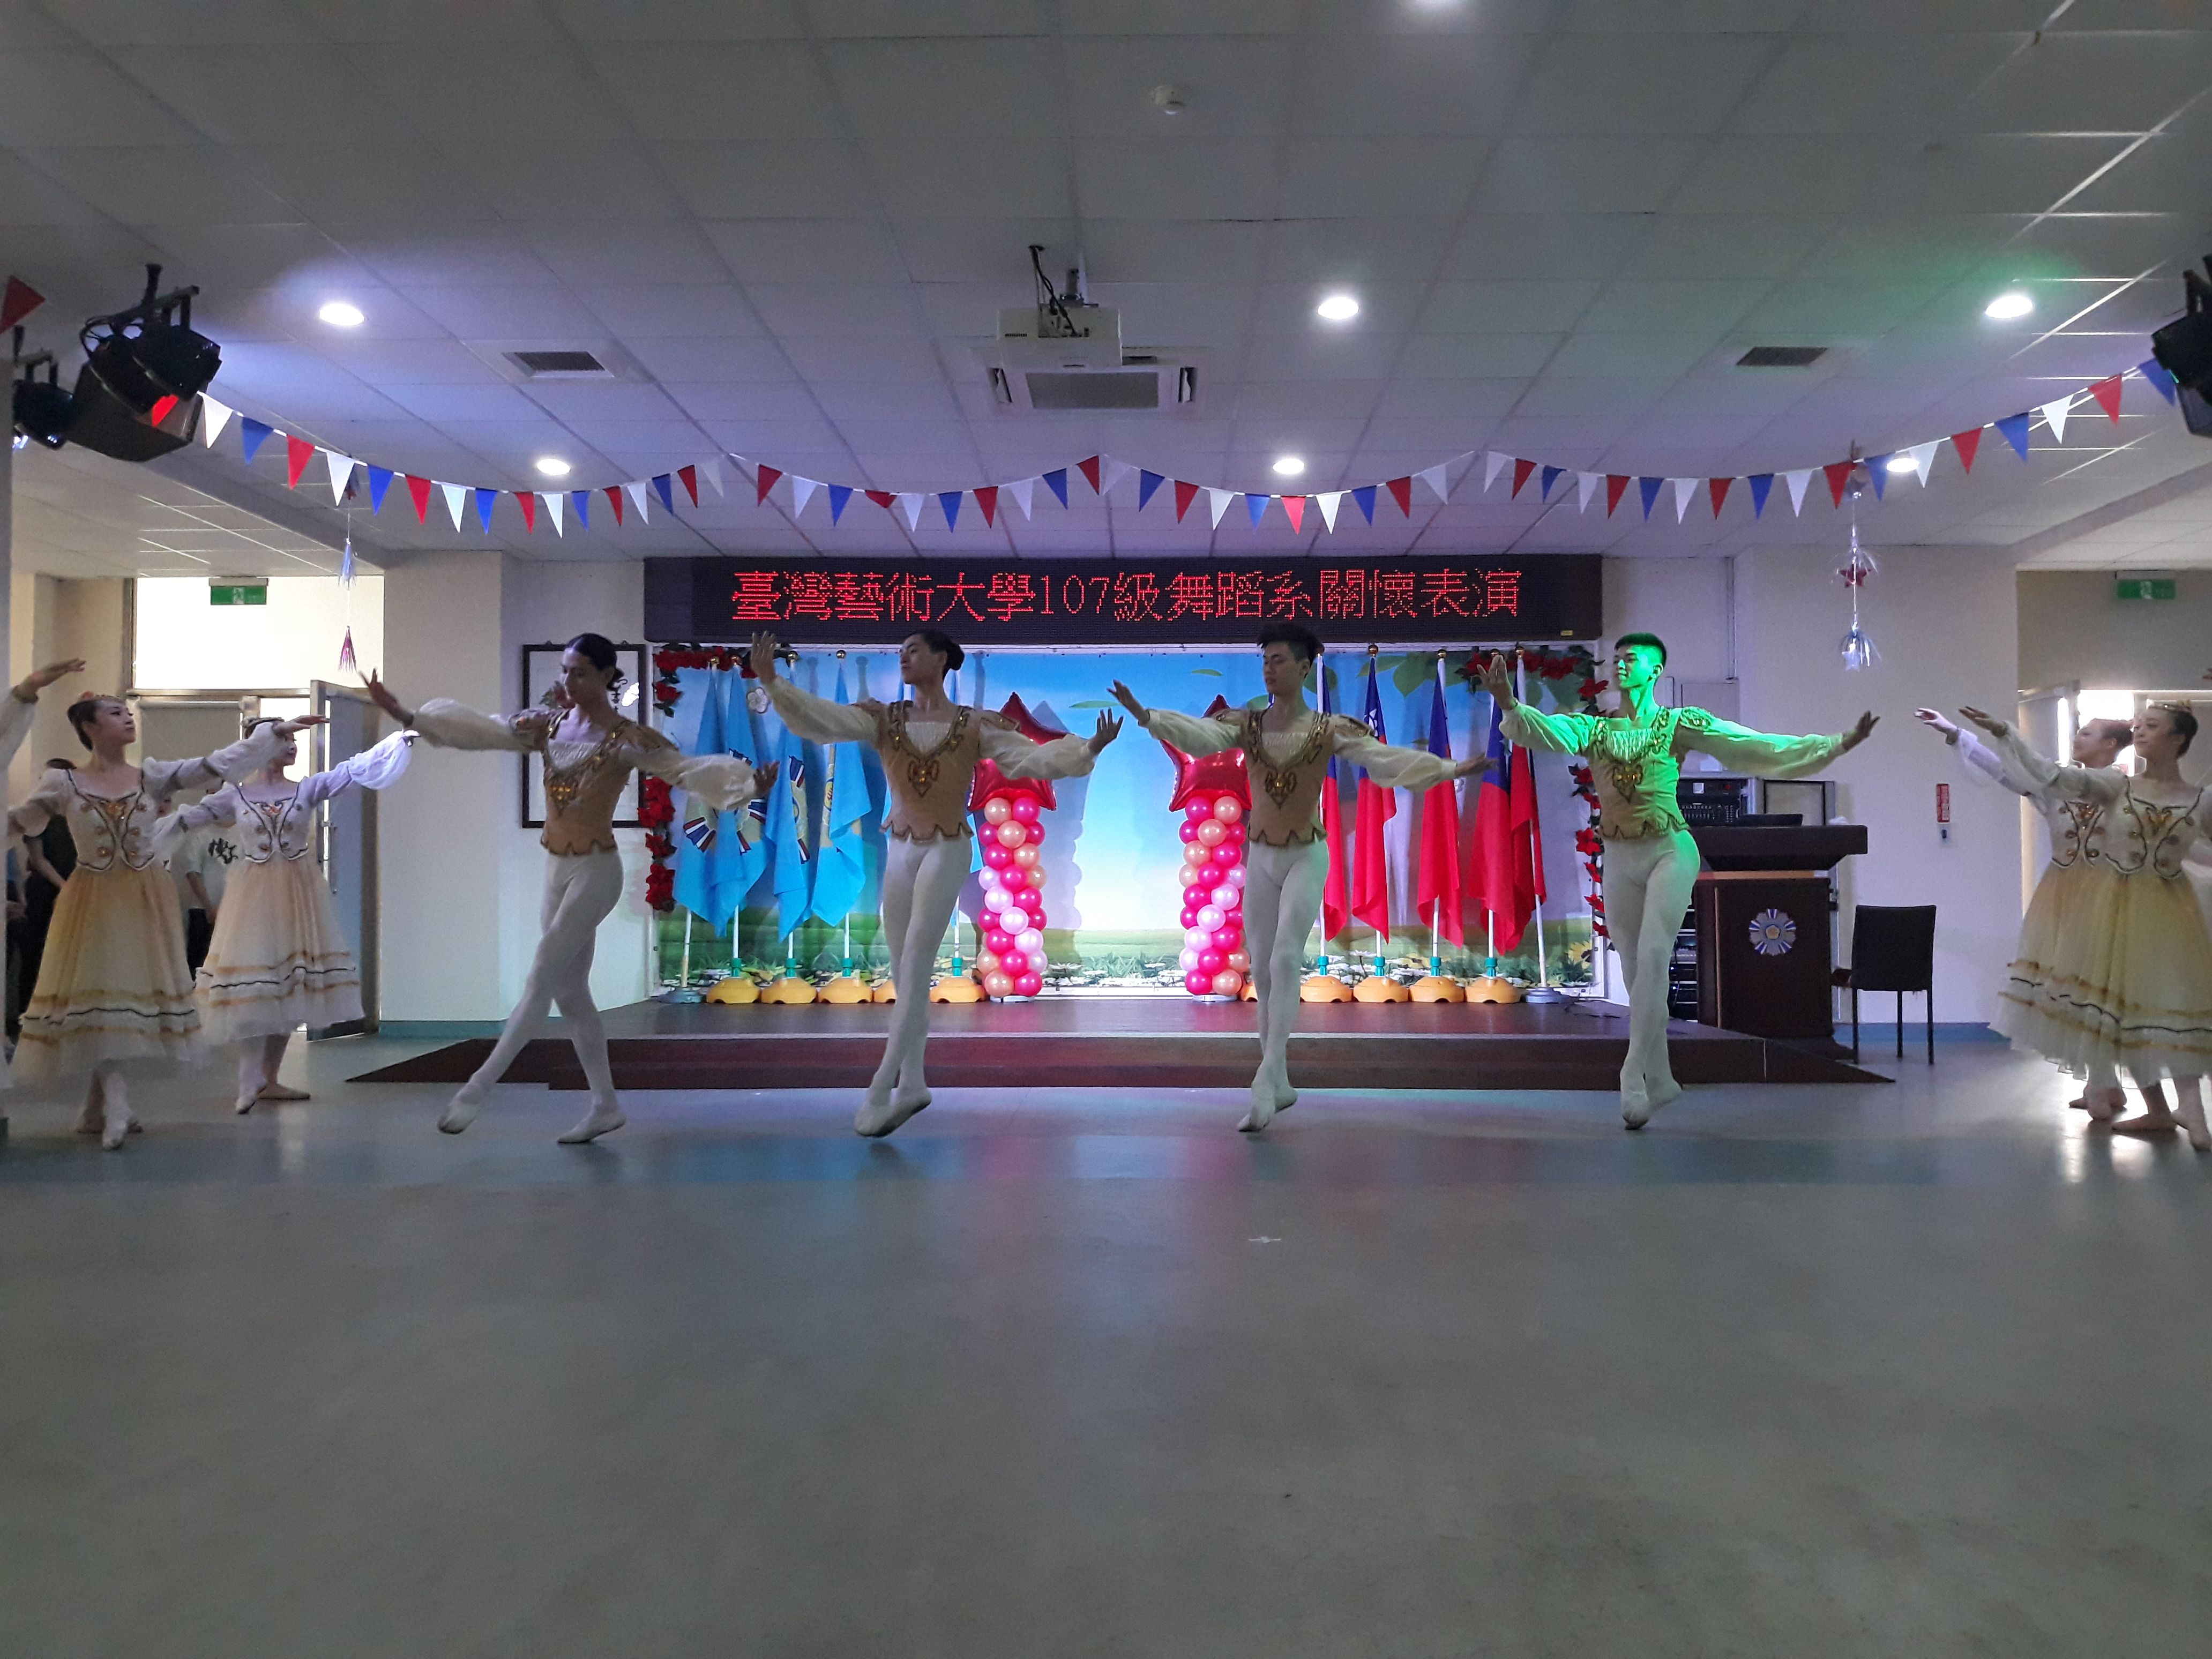 臺灣藝術大學107級舞蹈系服務學習表演5